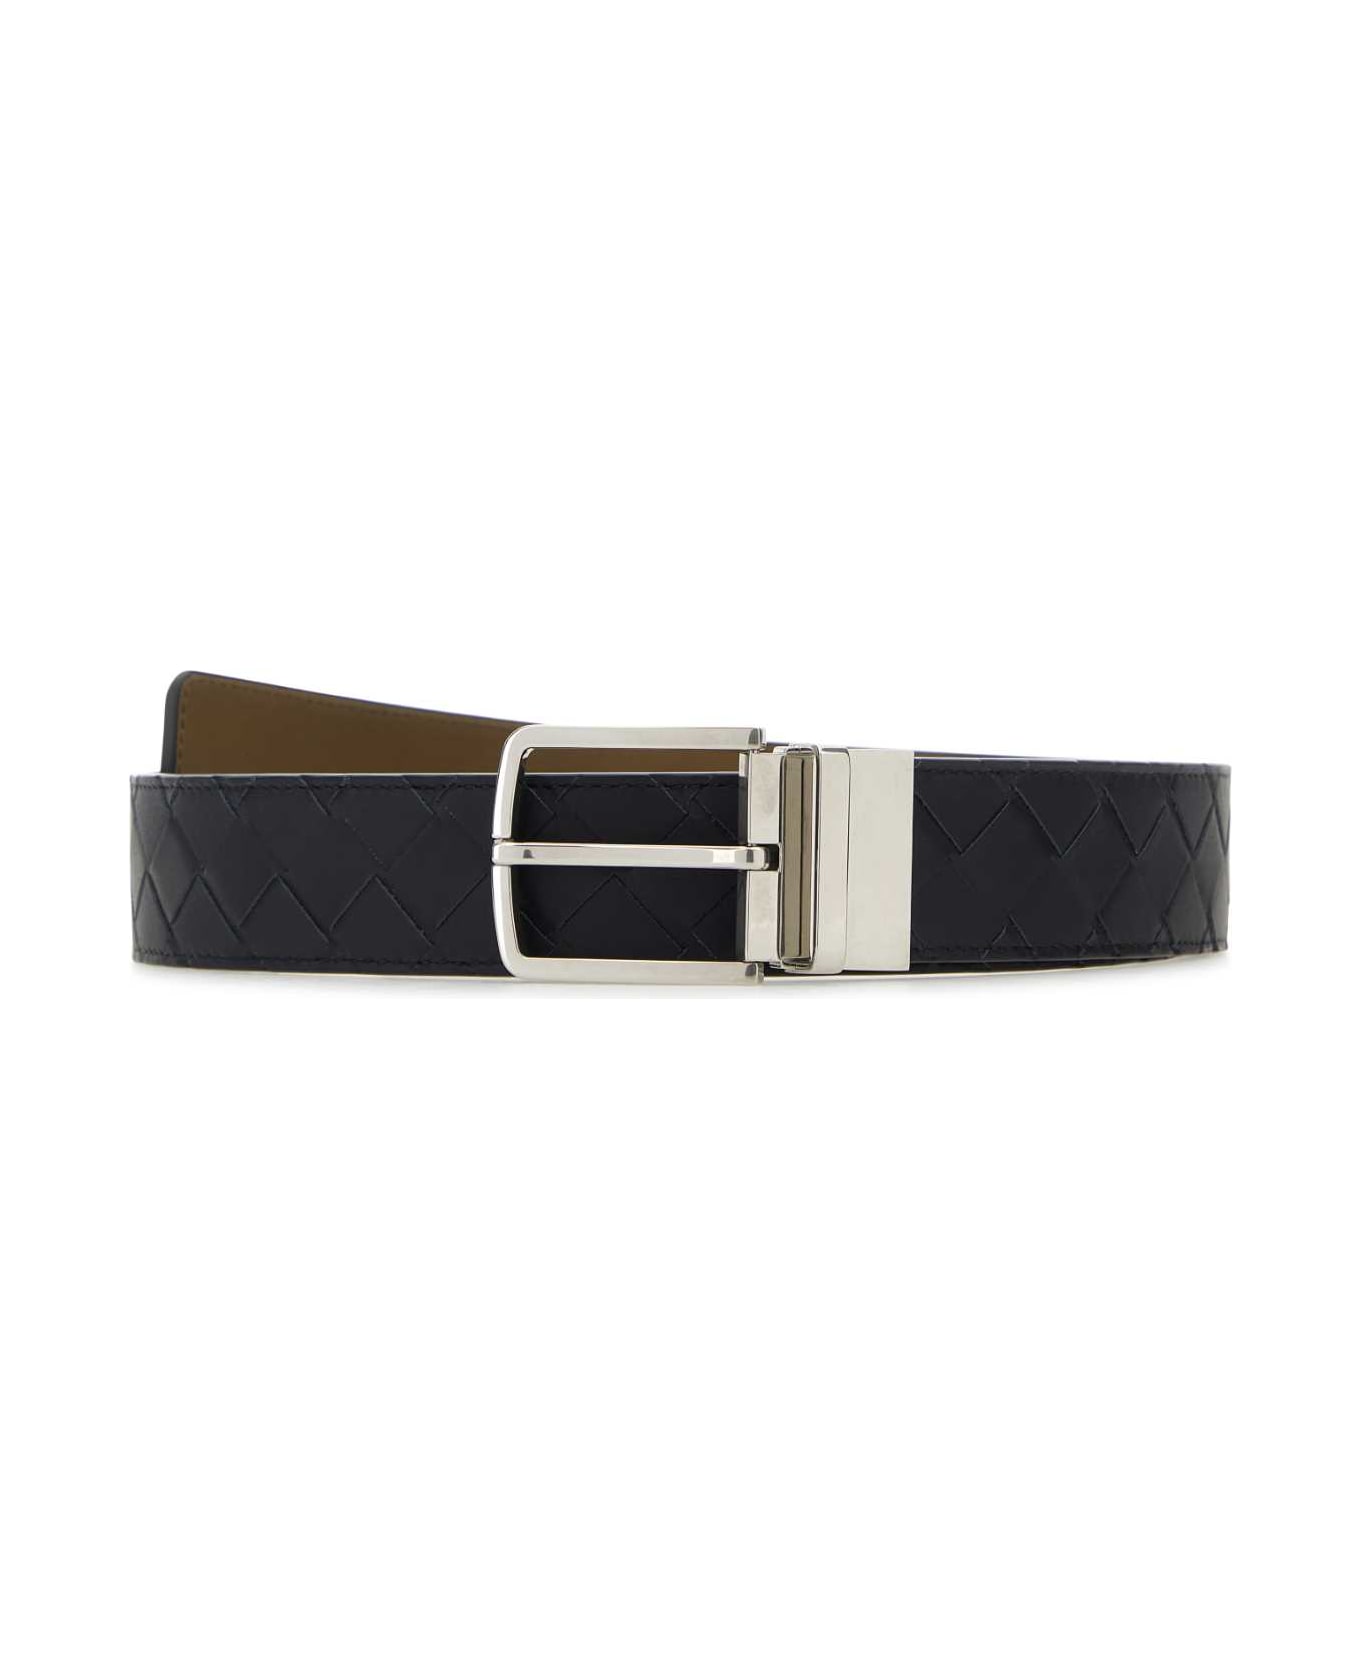 Bottega Veneta Black Leather Belt - SPACEARGILLA ベルト